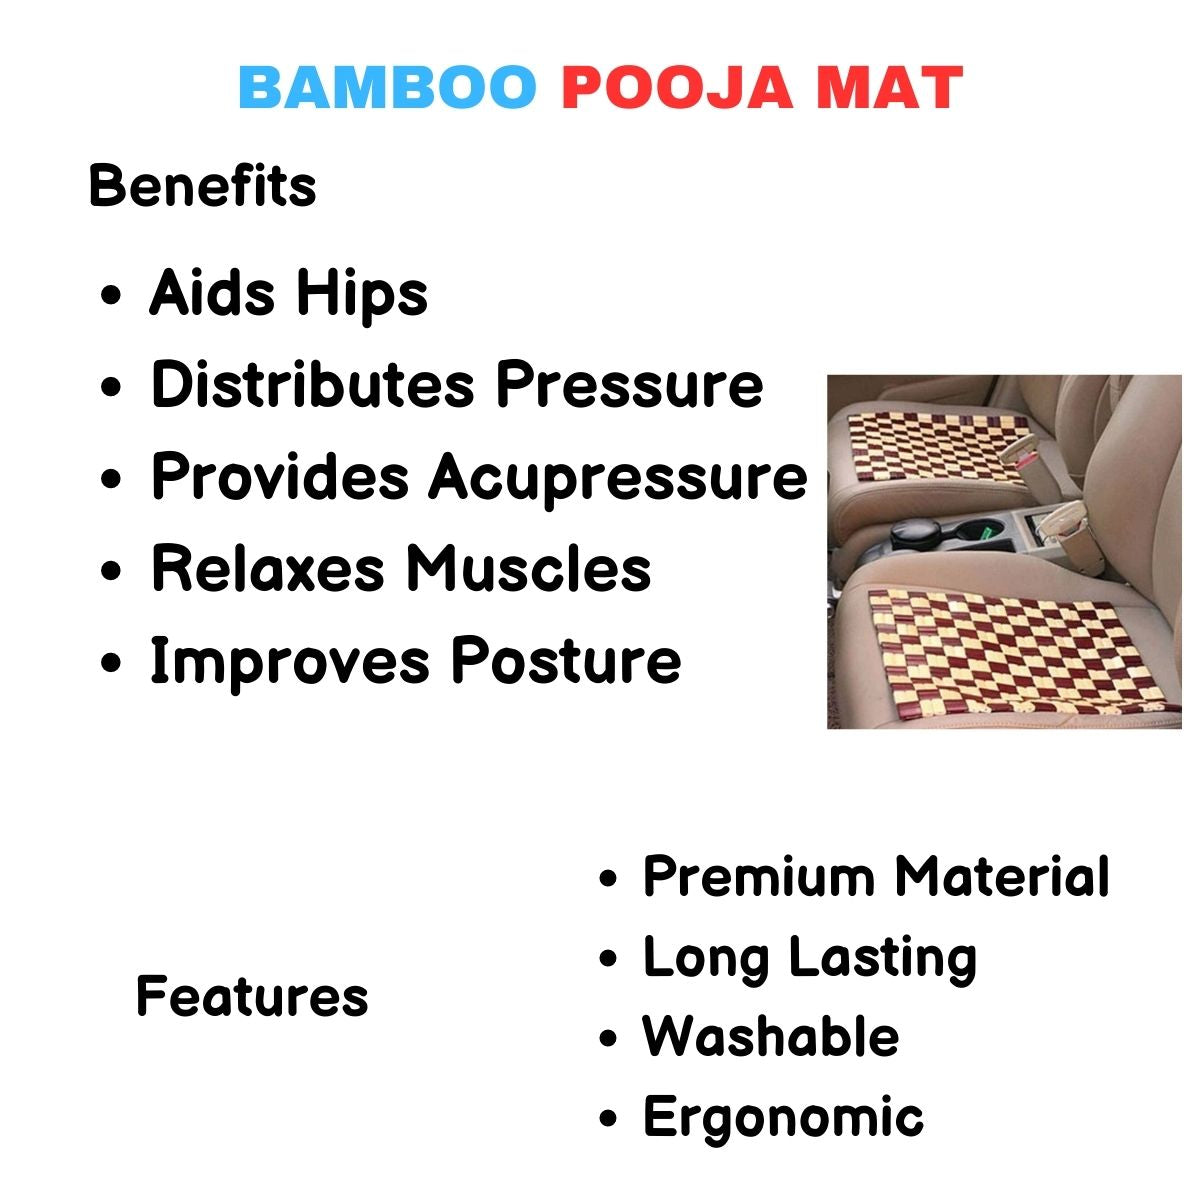 Bamboo Pooja Mat